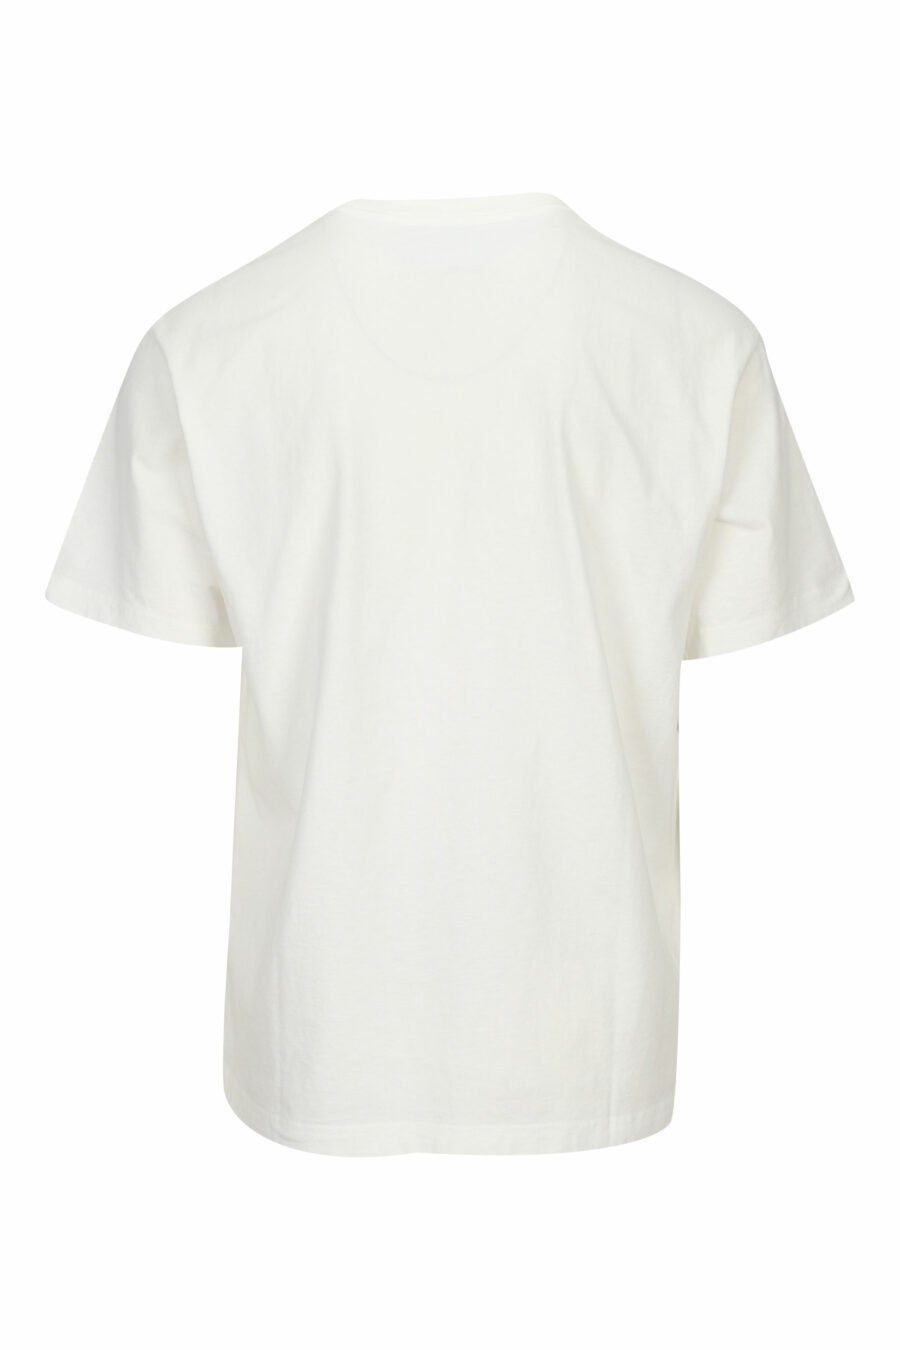 Camiseta blanca con maxilogo diagonal "kenzo orange" - 3612230627000 1